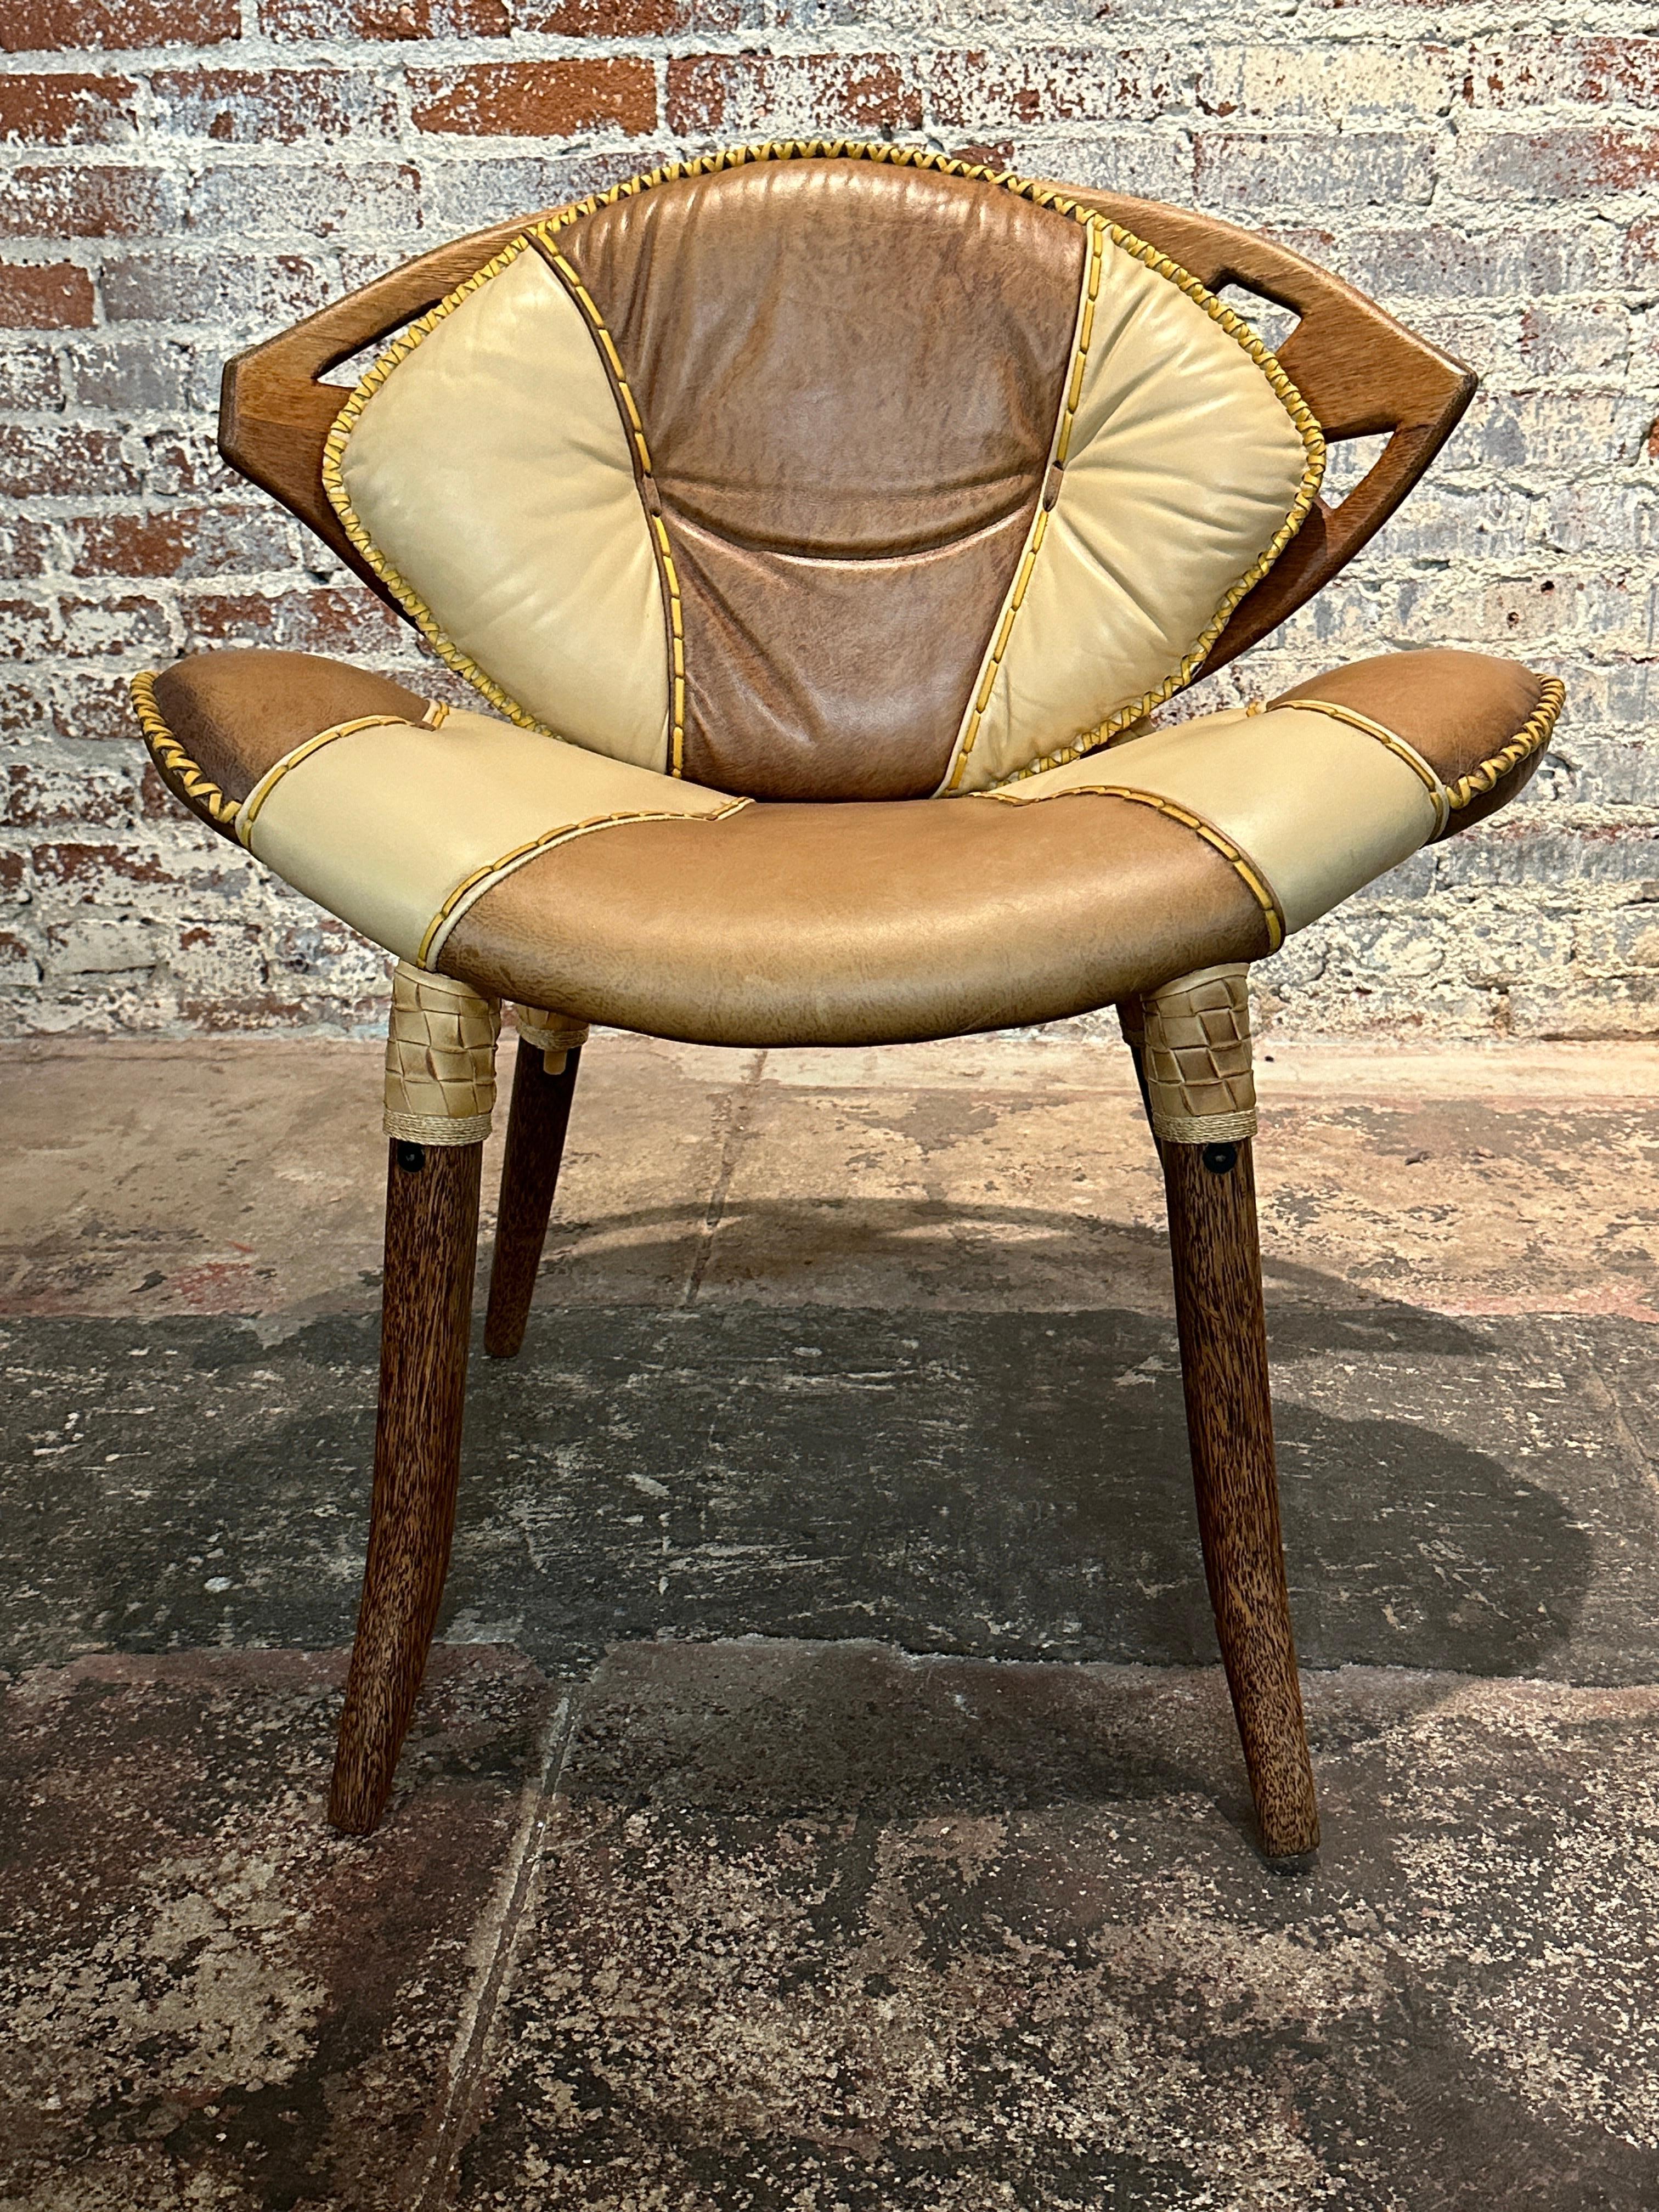 Cet ensemble de tables et de chaises Zulu, de couleur crème et café, de Pacific Green, allie authenticité et qualité de fabrication supérieure pour rehausser tout espace intérieur. Les chaises ont un dossier en forme de feuille de noyer et les pieds